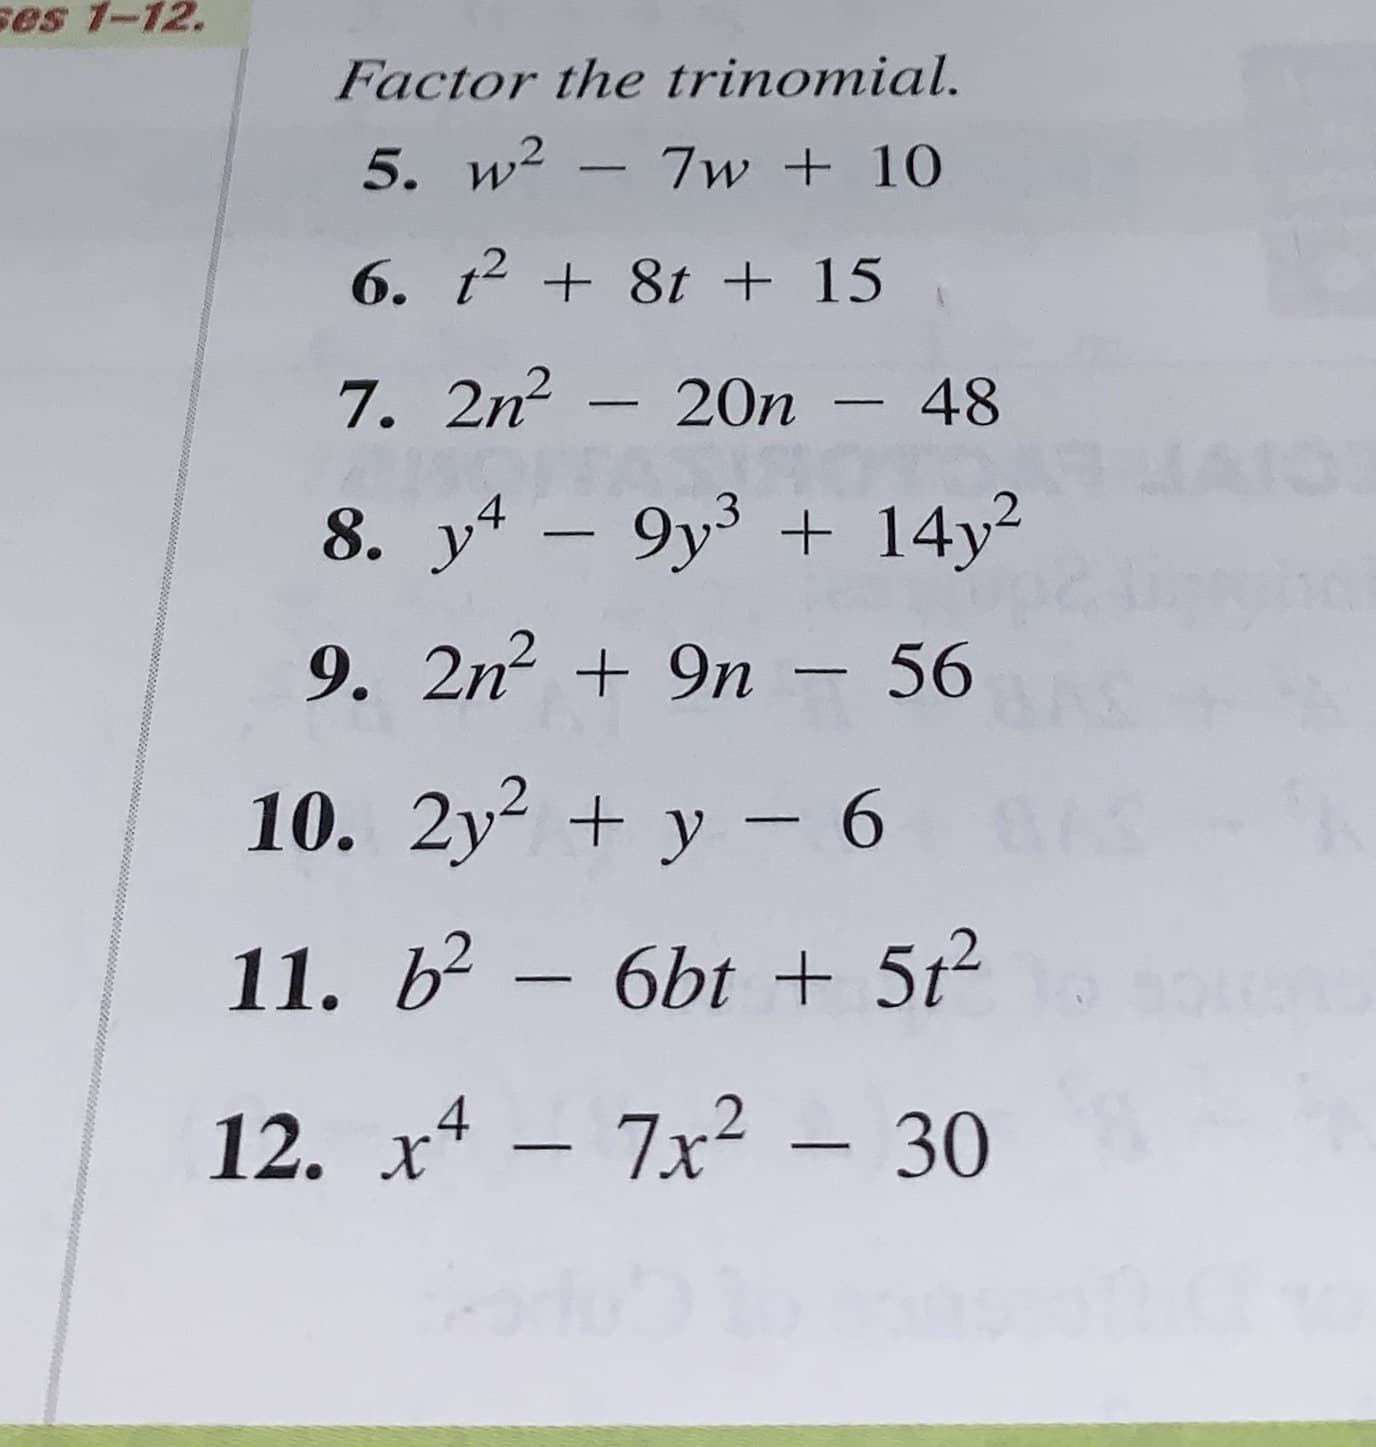 es 1-12.
Factor the trinomial.
5. w2
7w +10
6. t 8t + 15
7. 2n-20n - 48
8. y-9y3 14y2
9. 2n
9n - 56
10. 2y y 6
11. b2- 6bt 5t2
7x2-30
12. х4
